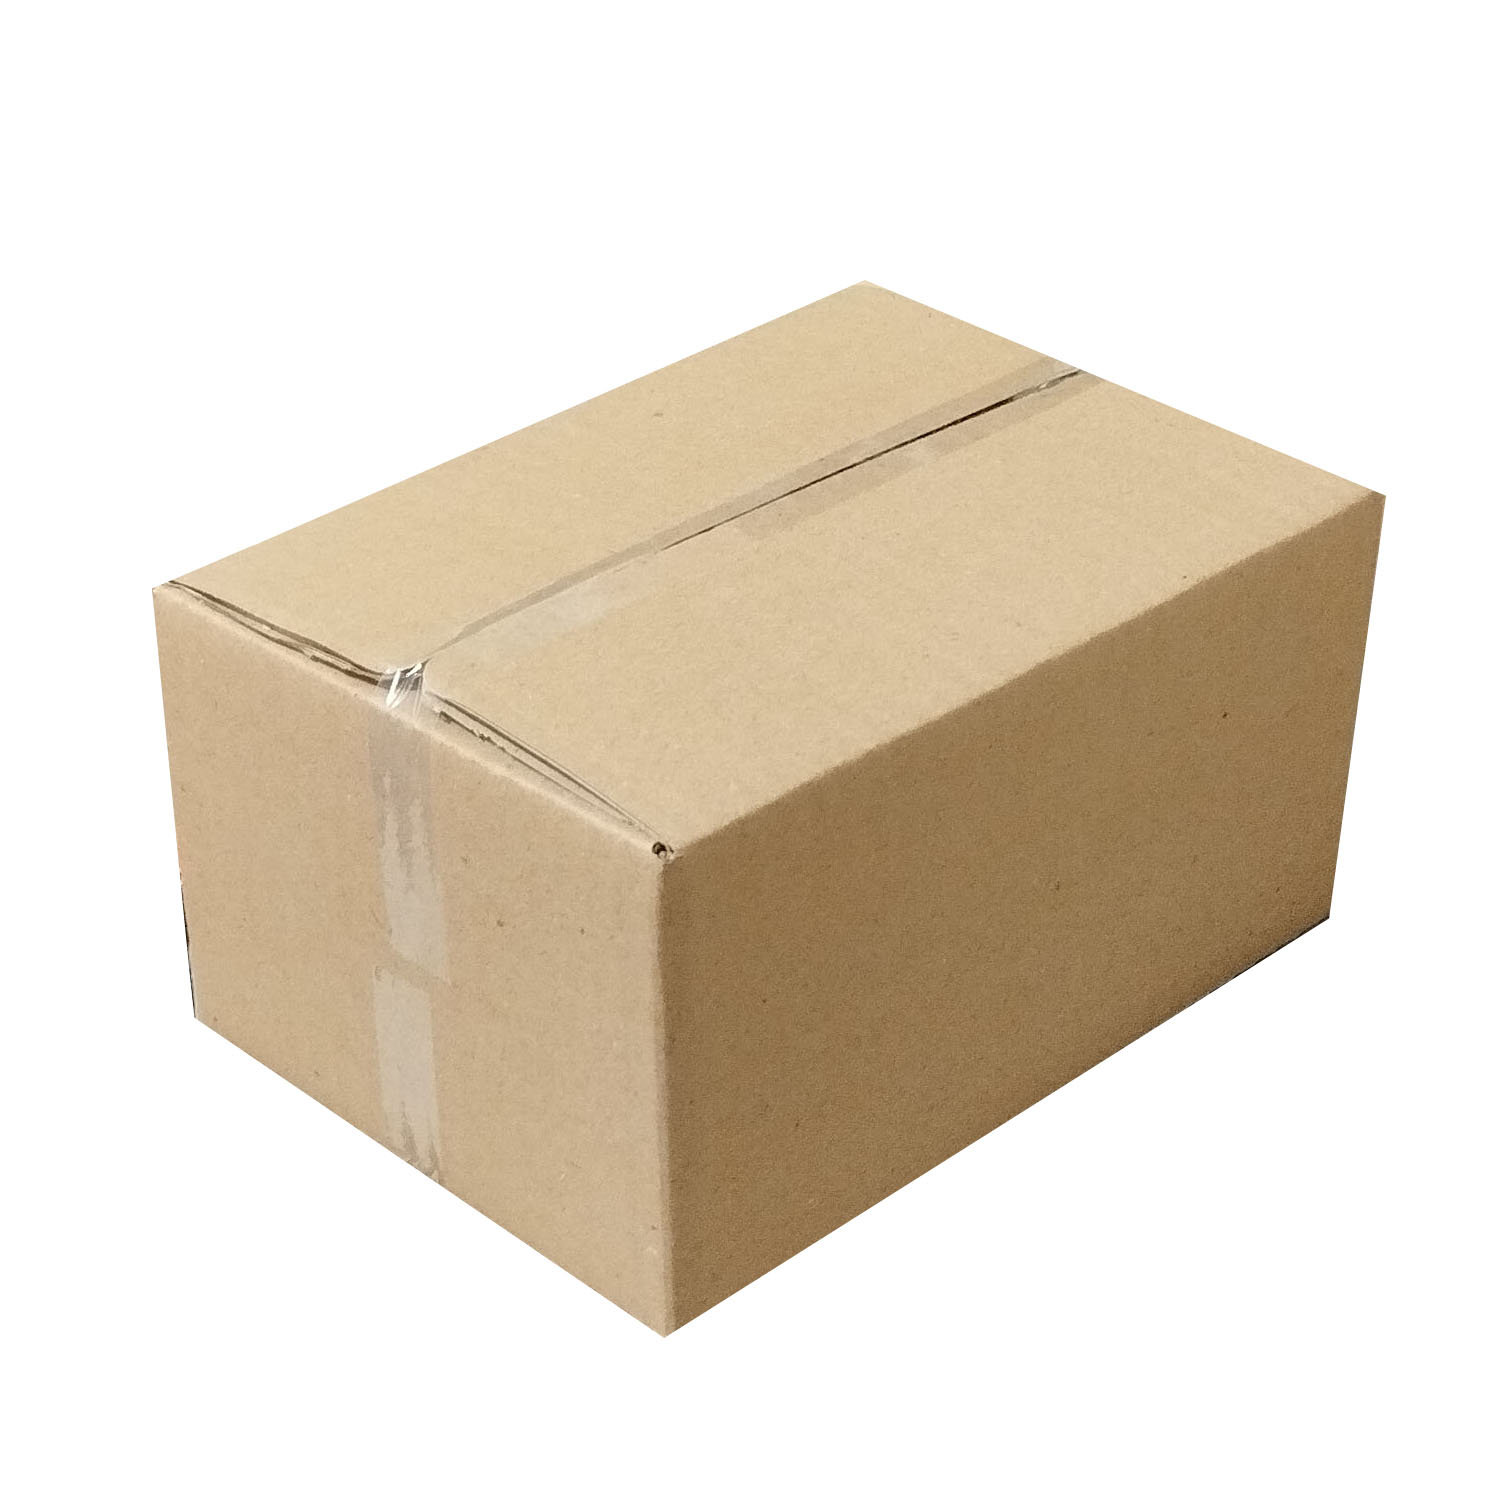 جعبه بسته بندی مدل cc2 بسته بندی 120 عددی